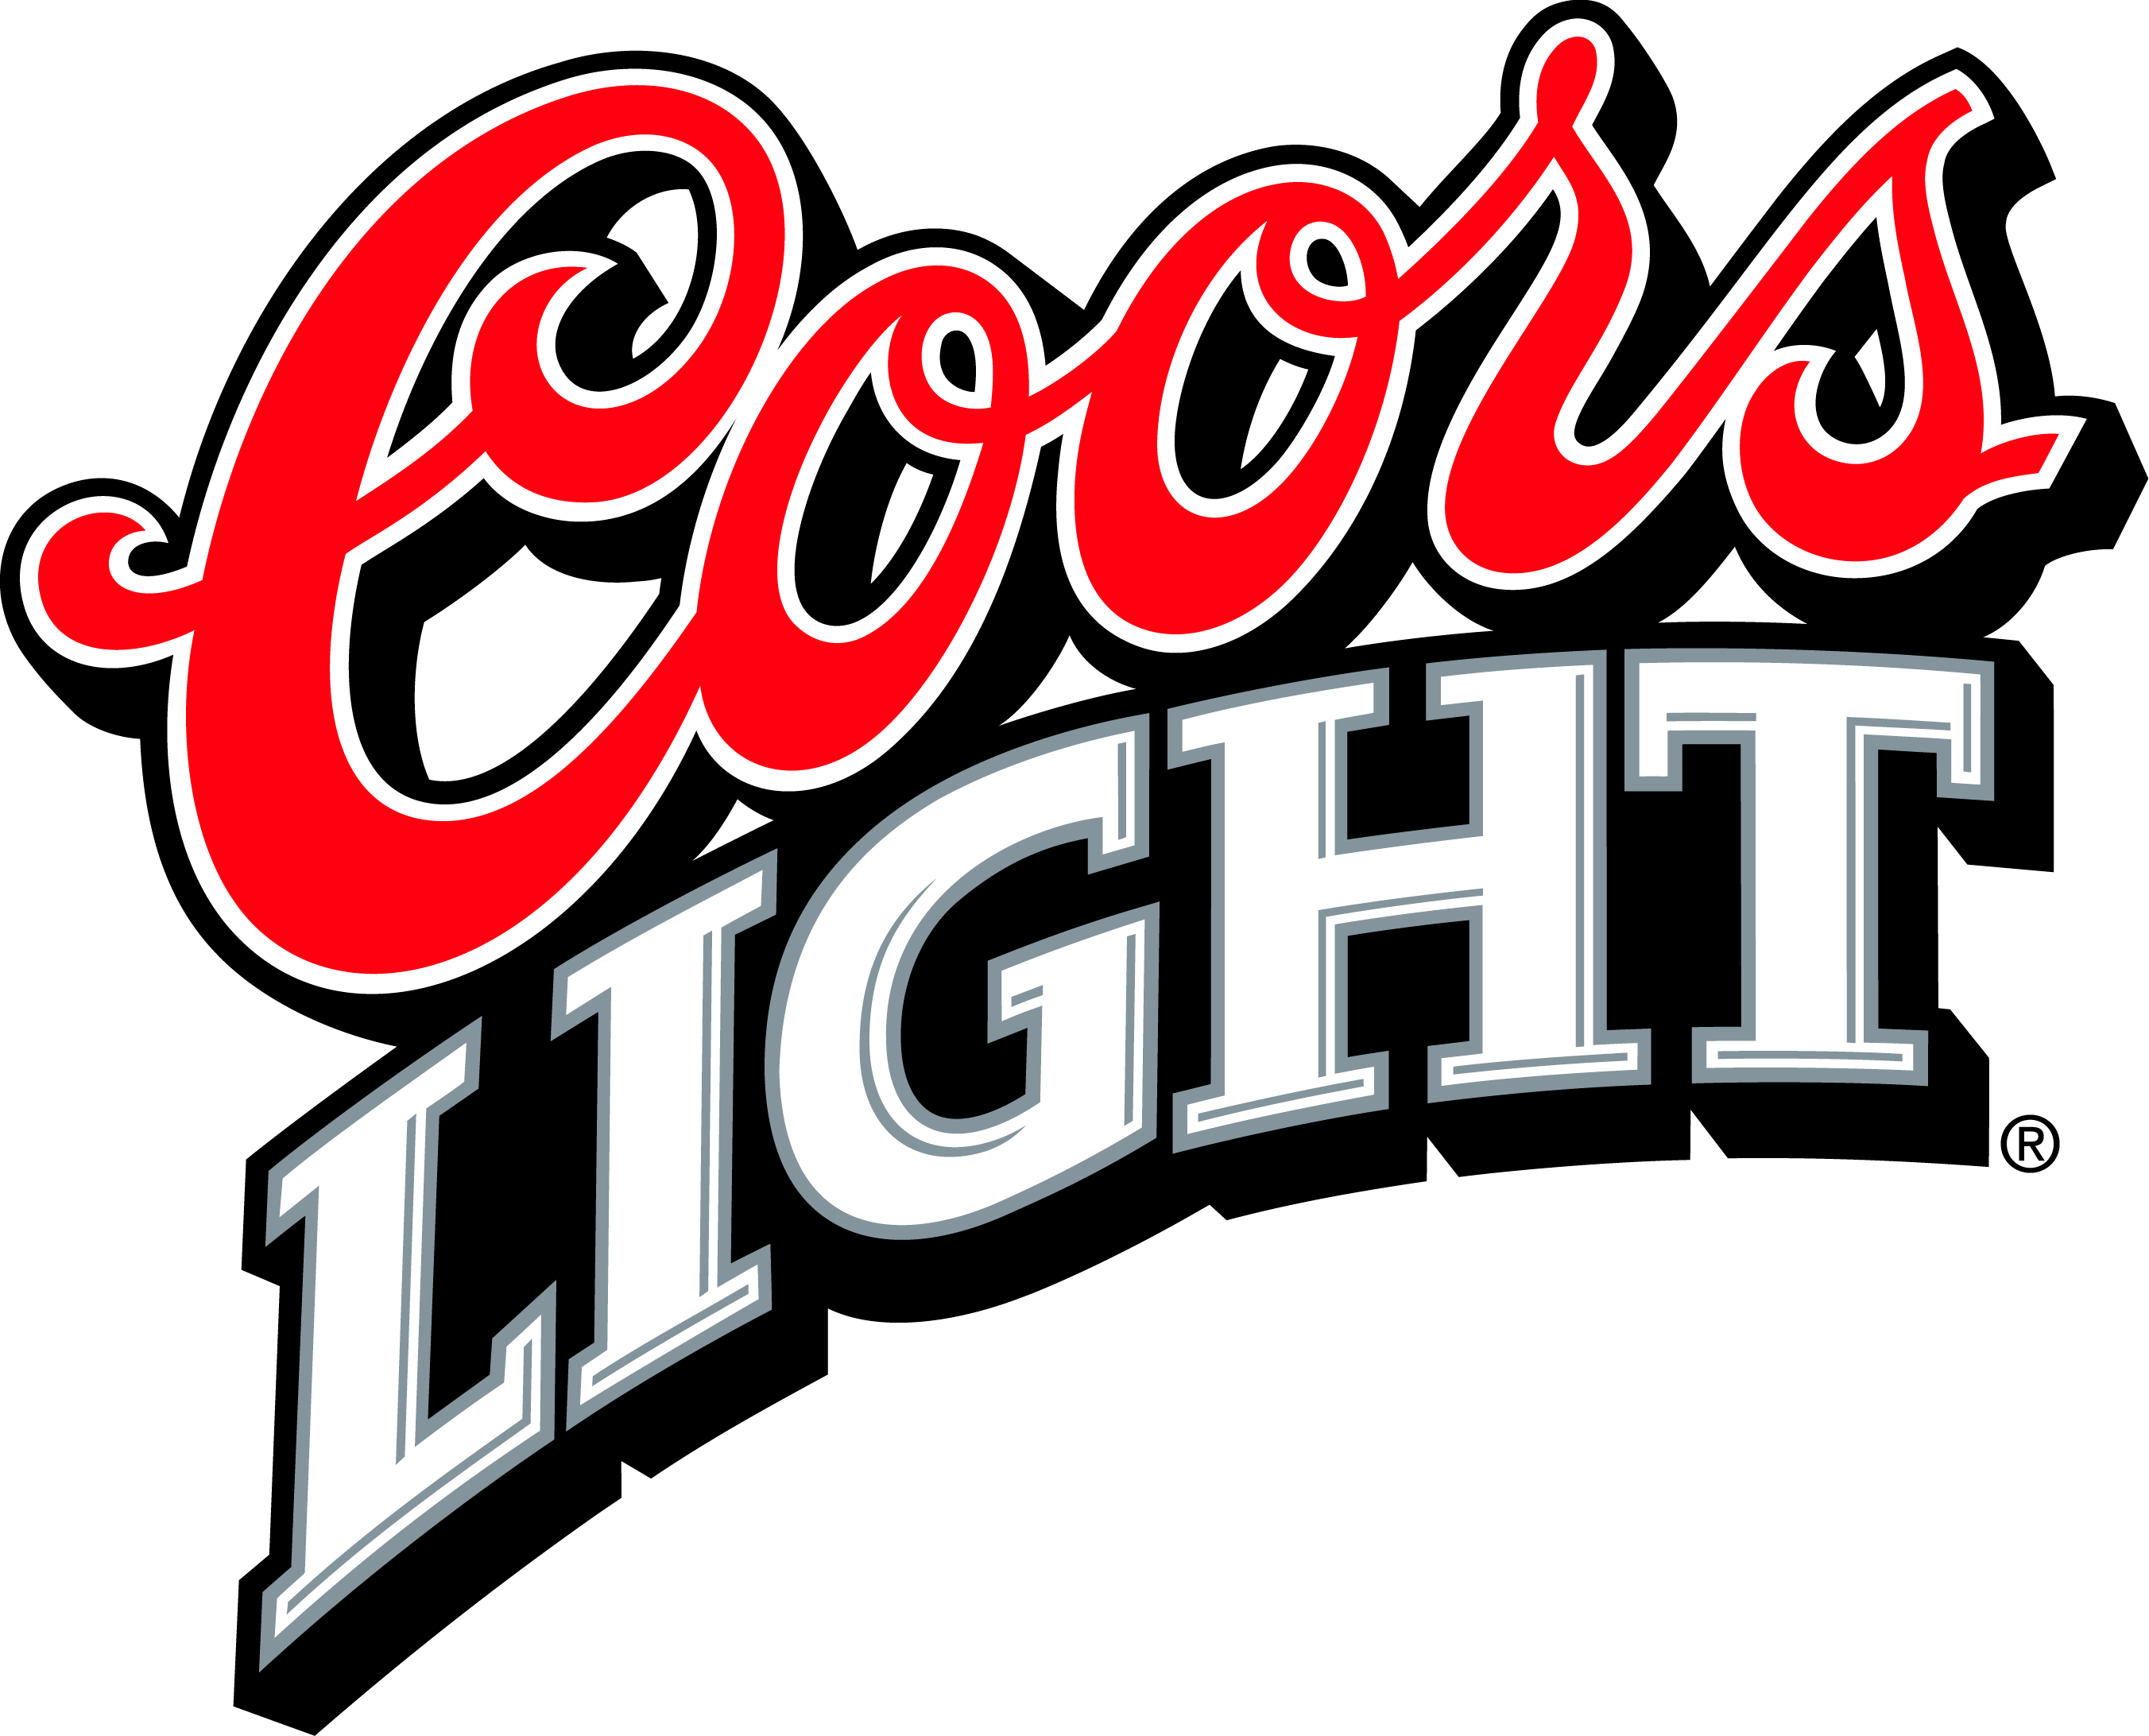 Beer Logos